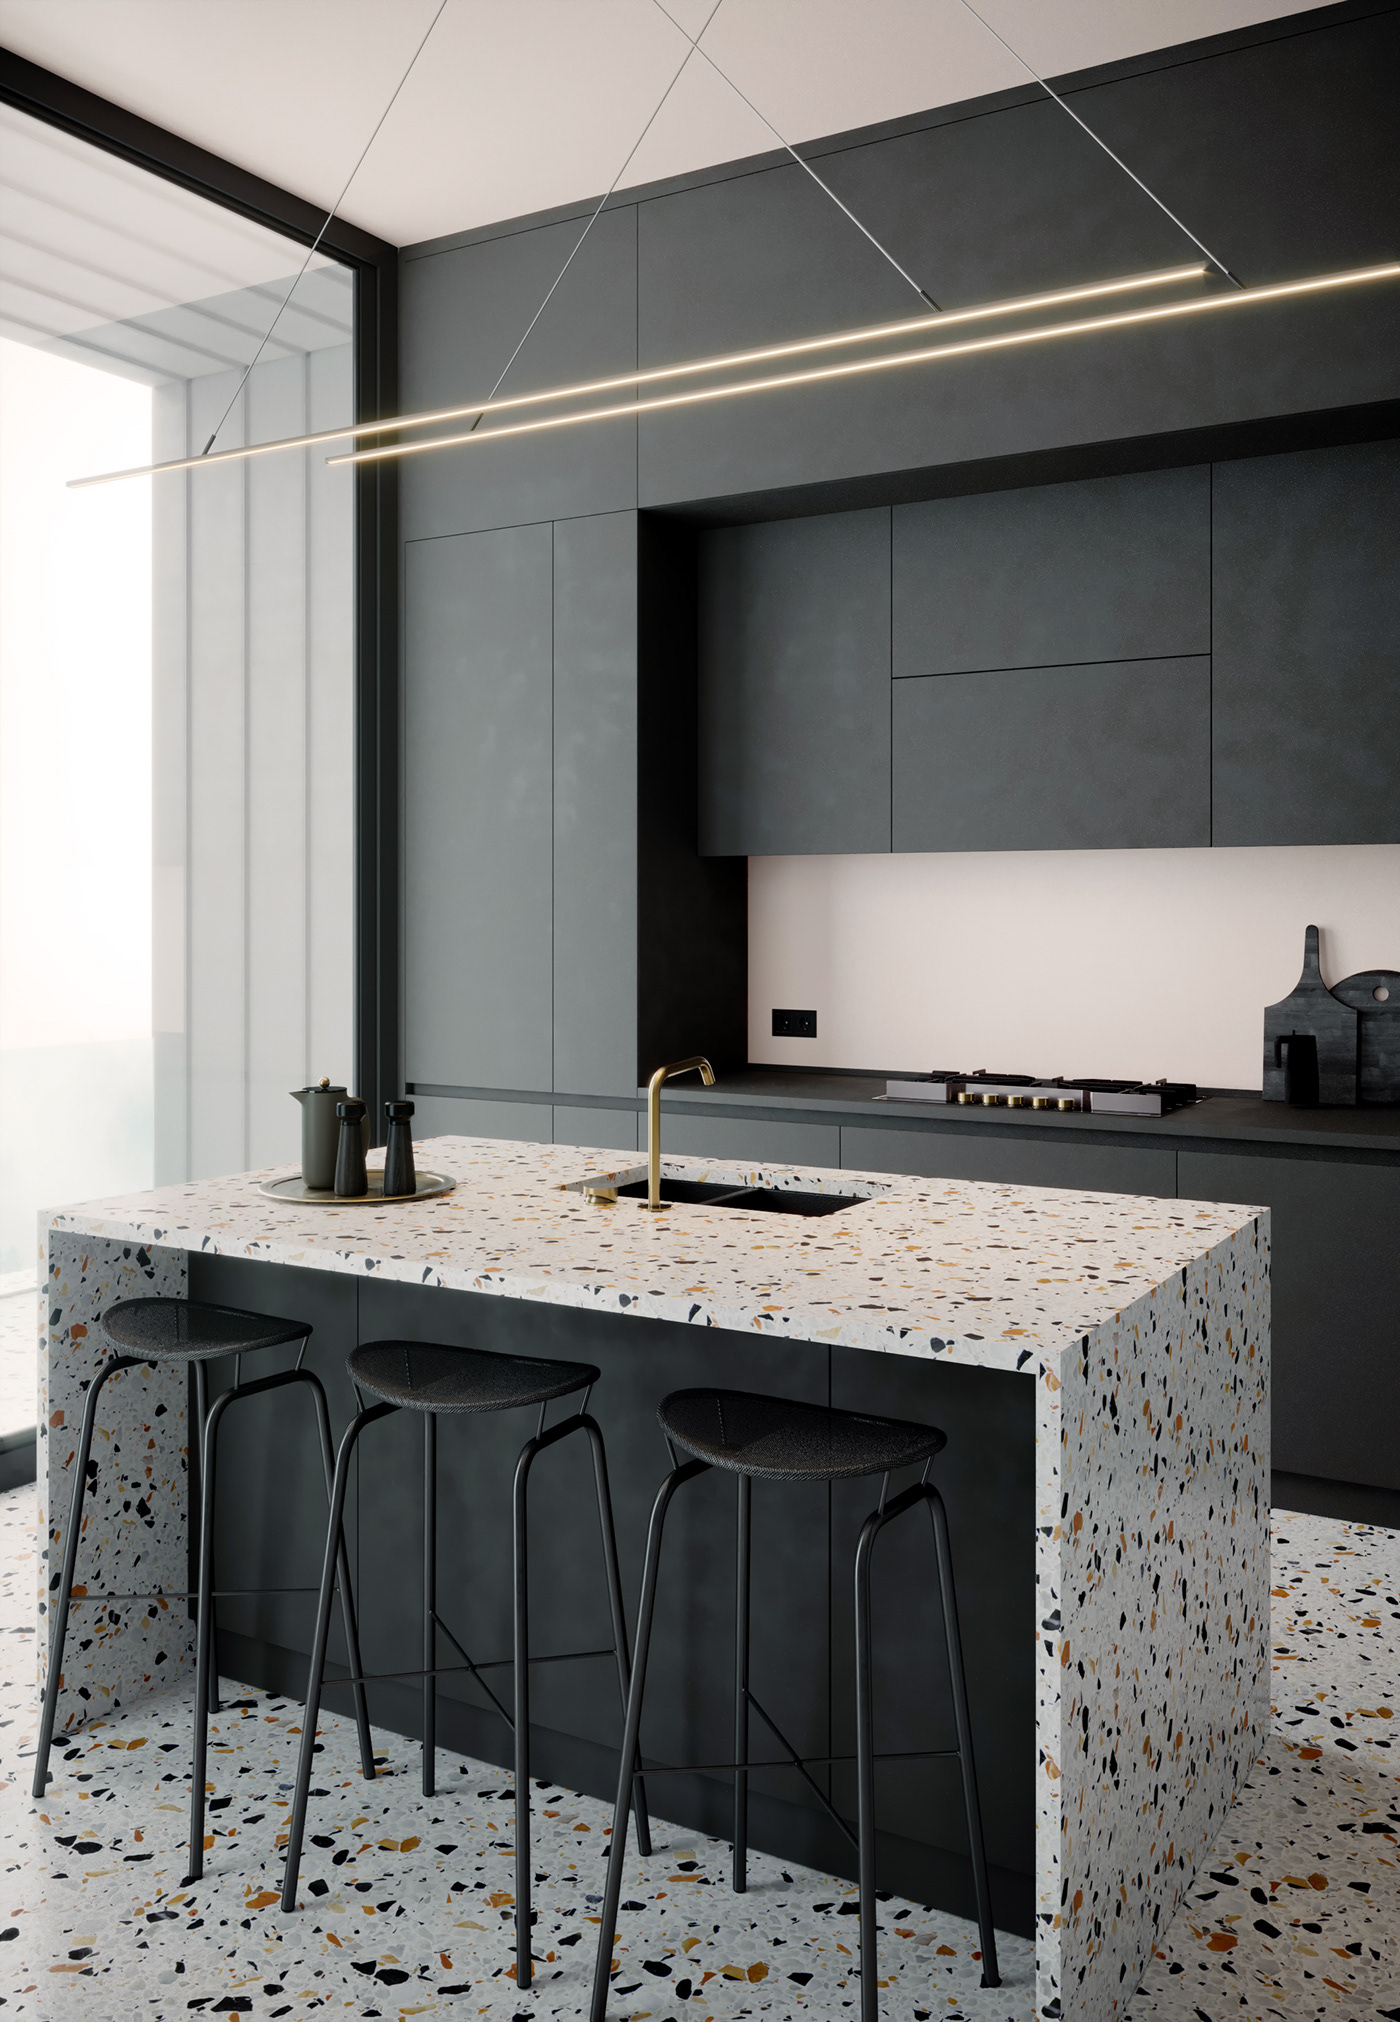 terazzo kitchen texture design black dark color contemporary Interior